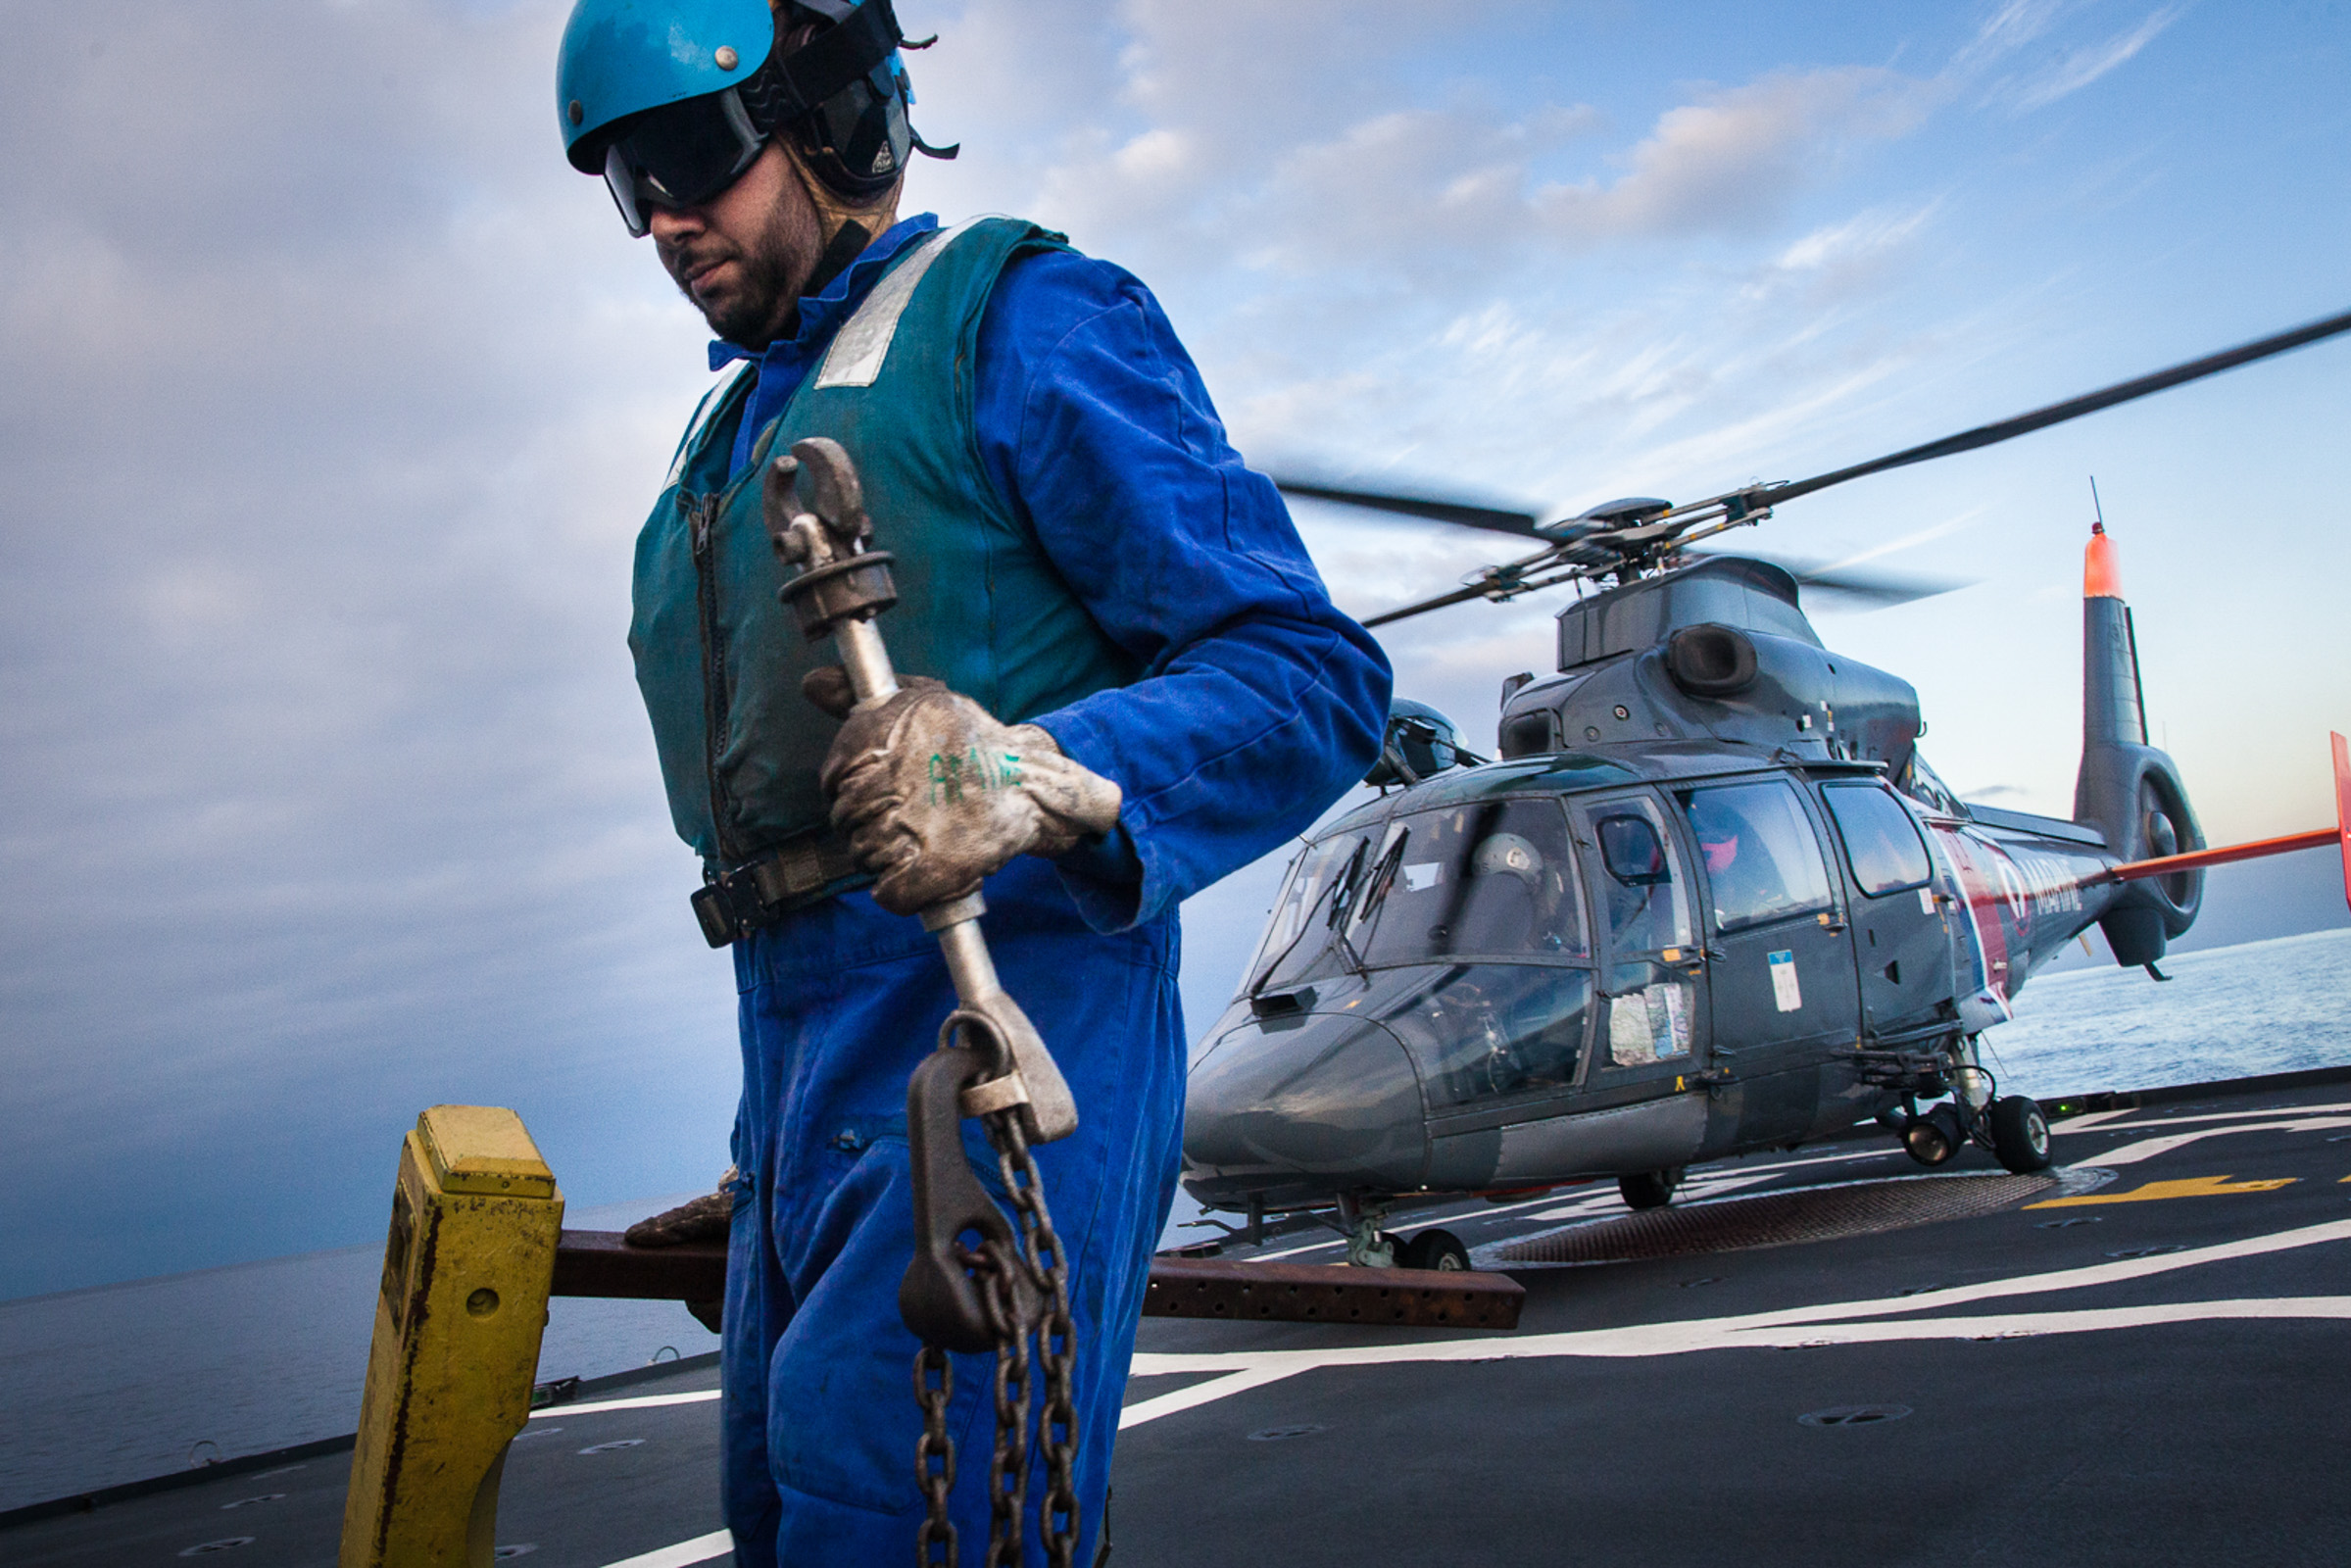 Mer méditerrannée, 02.12.2015. Arrivée d'un hélicoptère sur la frégate le "Jean Bart", lors d'exercices interarmées.